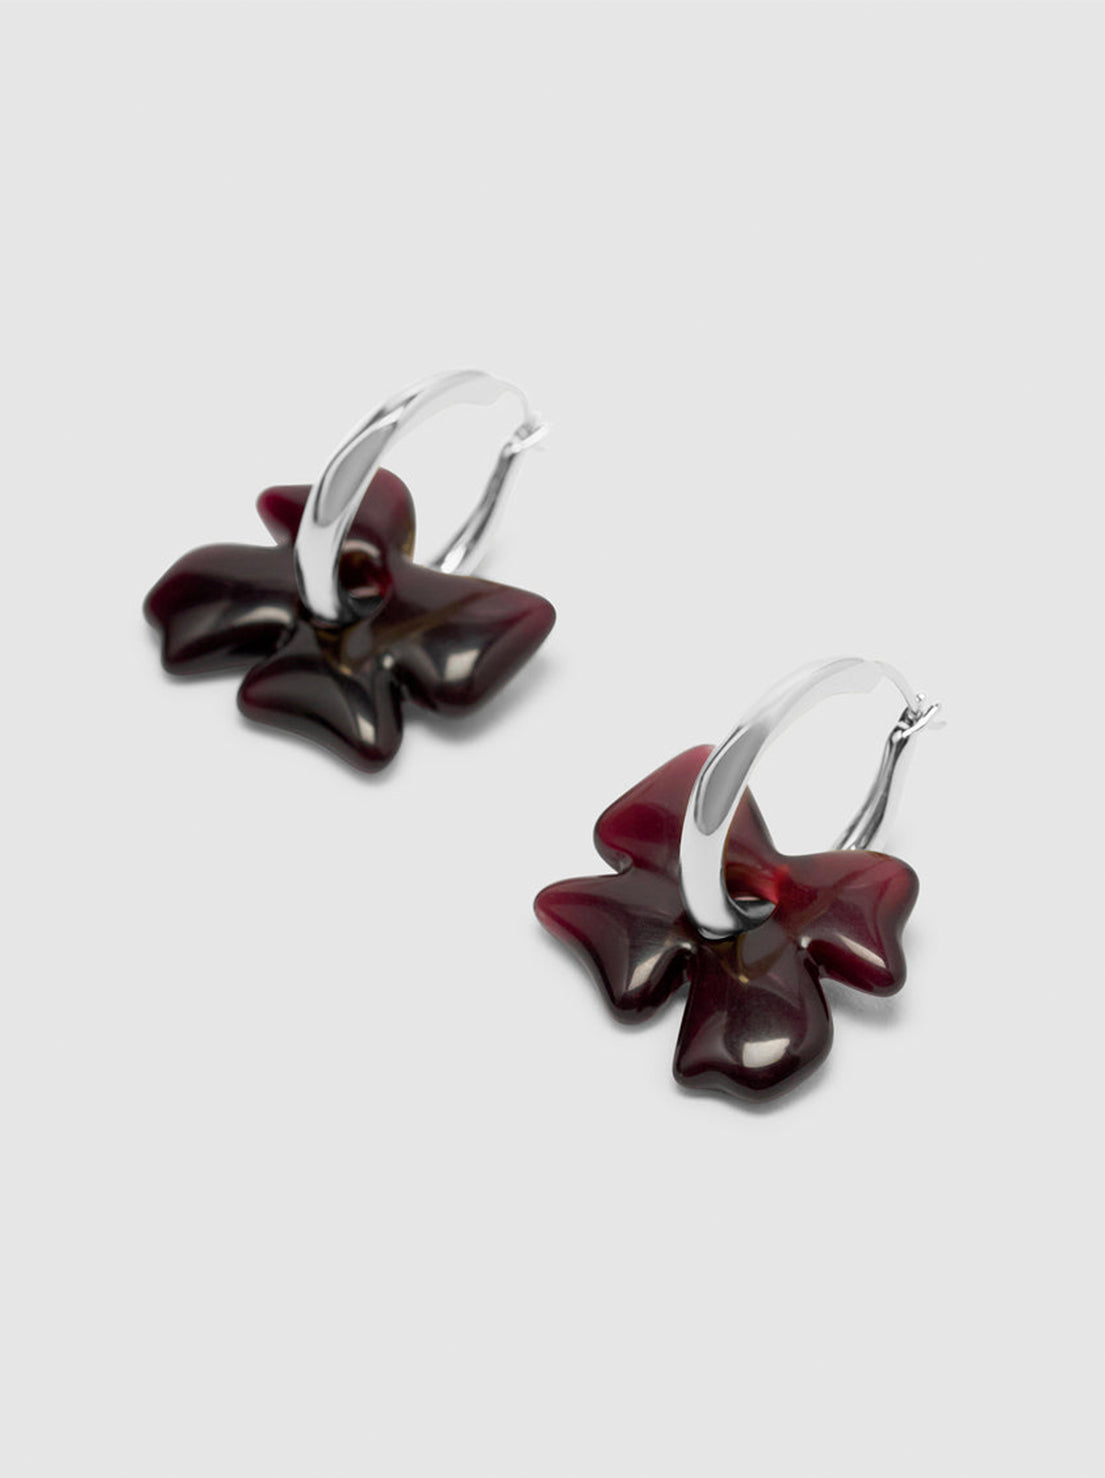 Brie Leon - Glass Flower Earrings - Silver